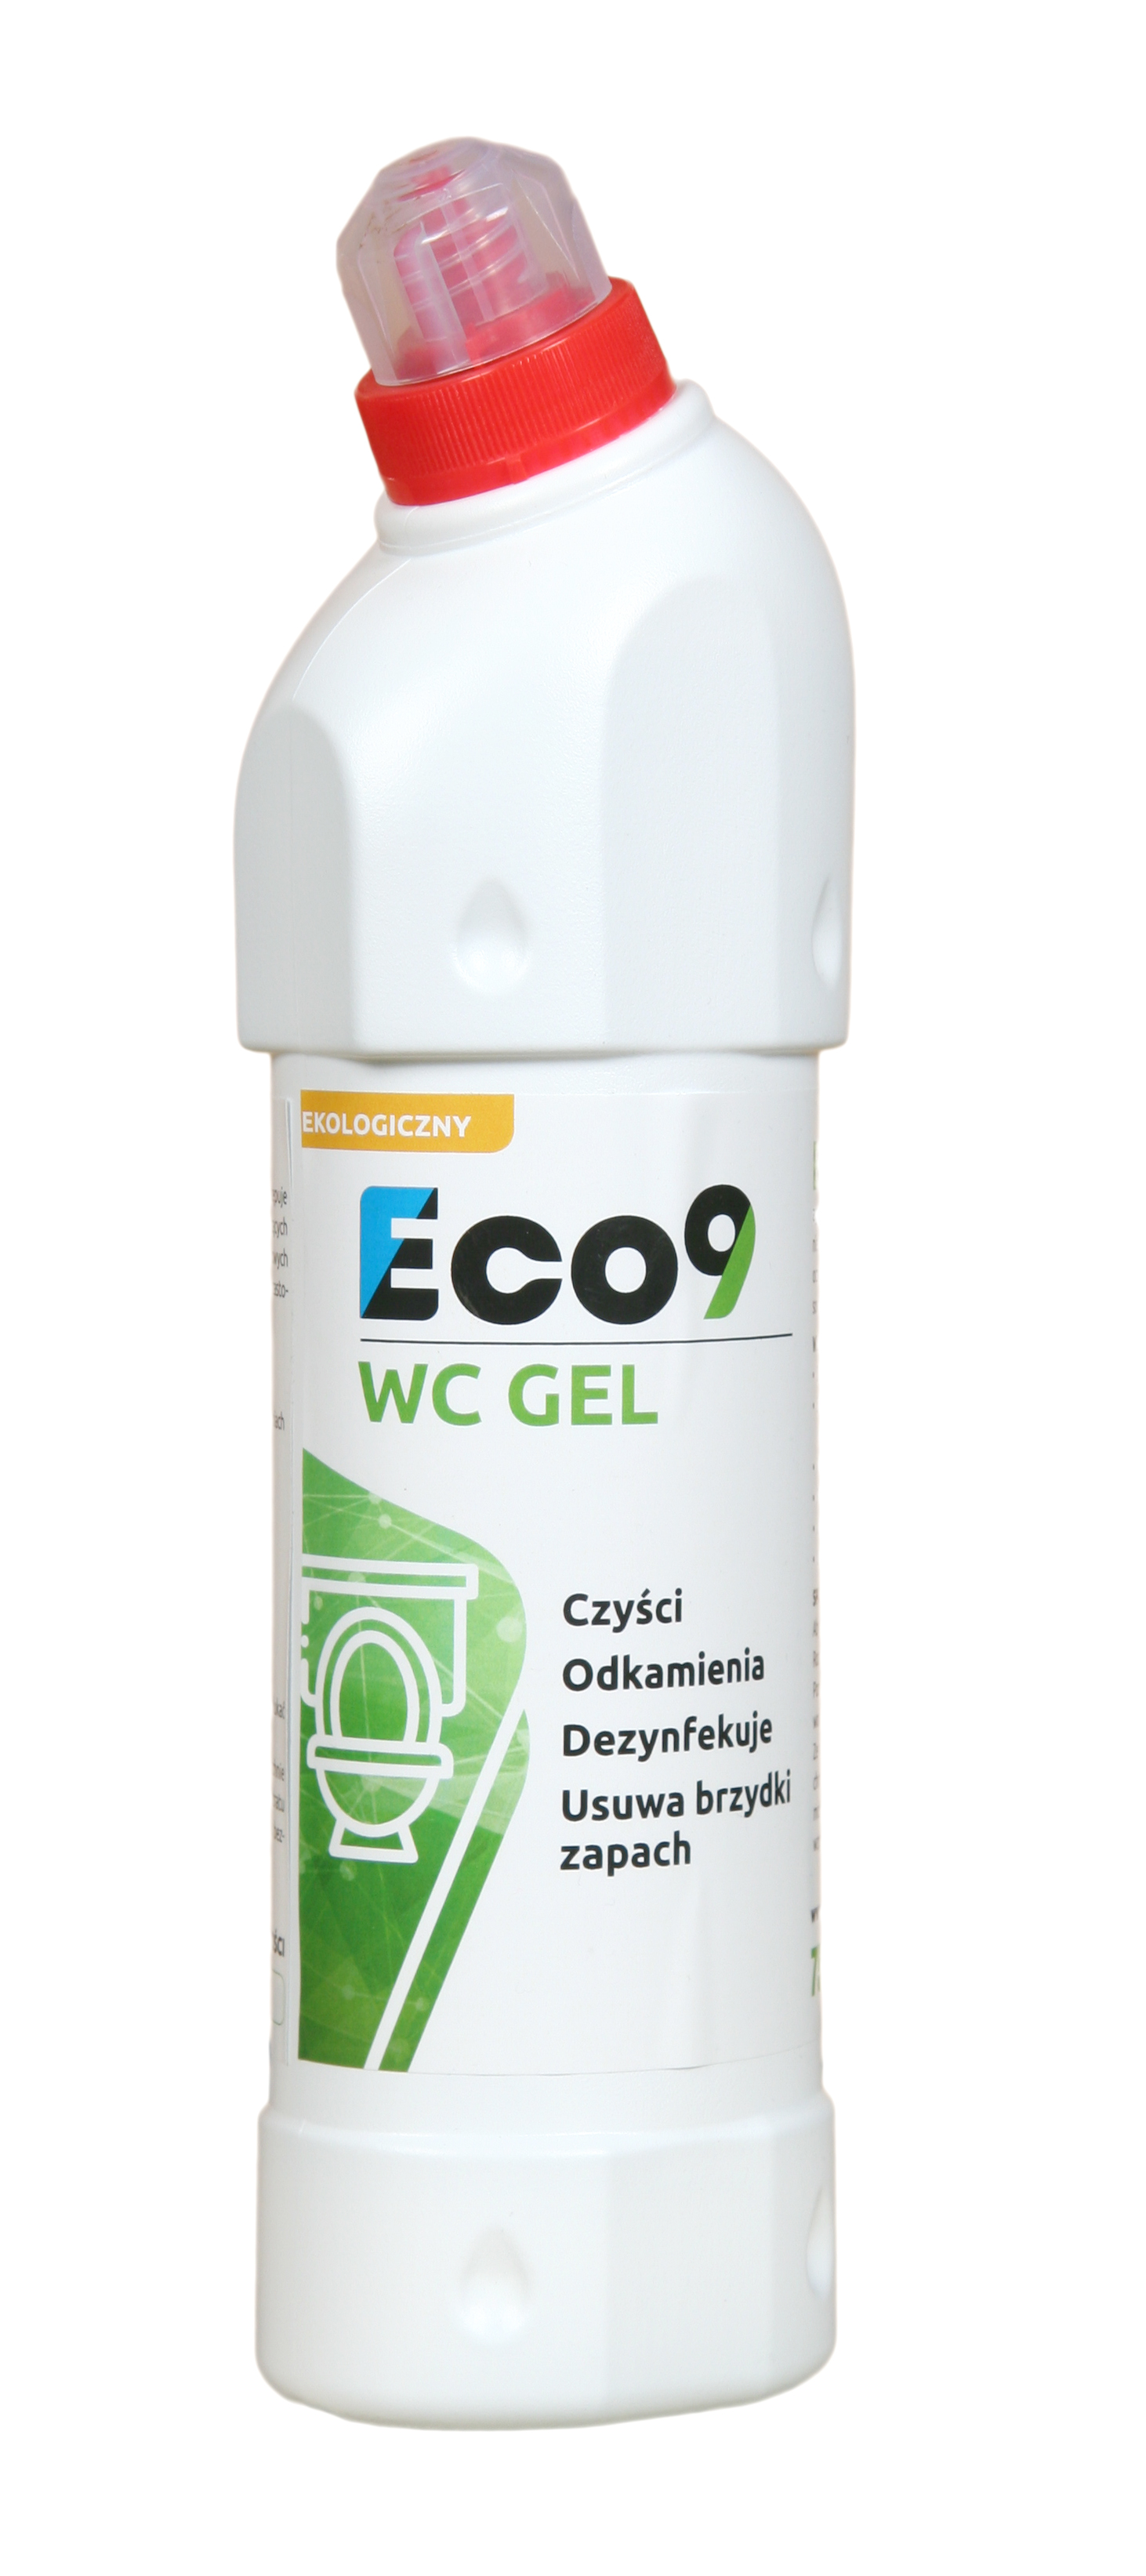 Eco9 WC Gel - ekologiczny żel do toalet